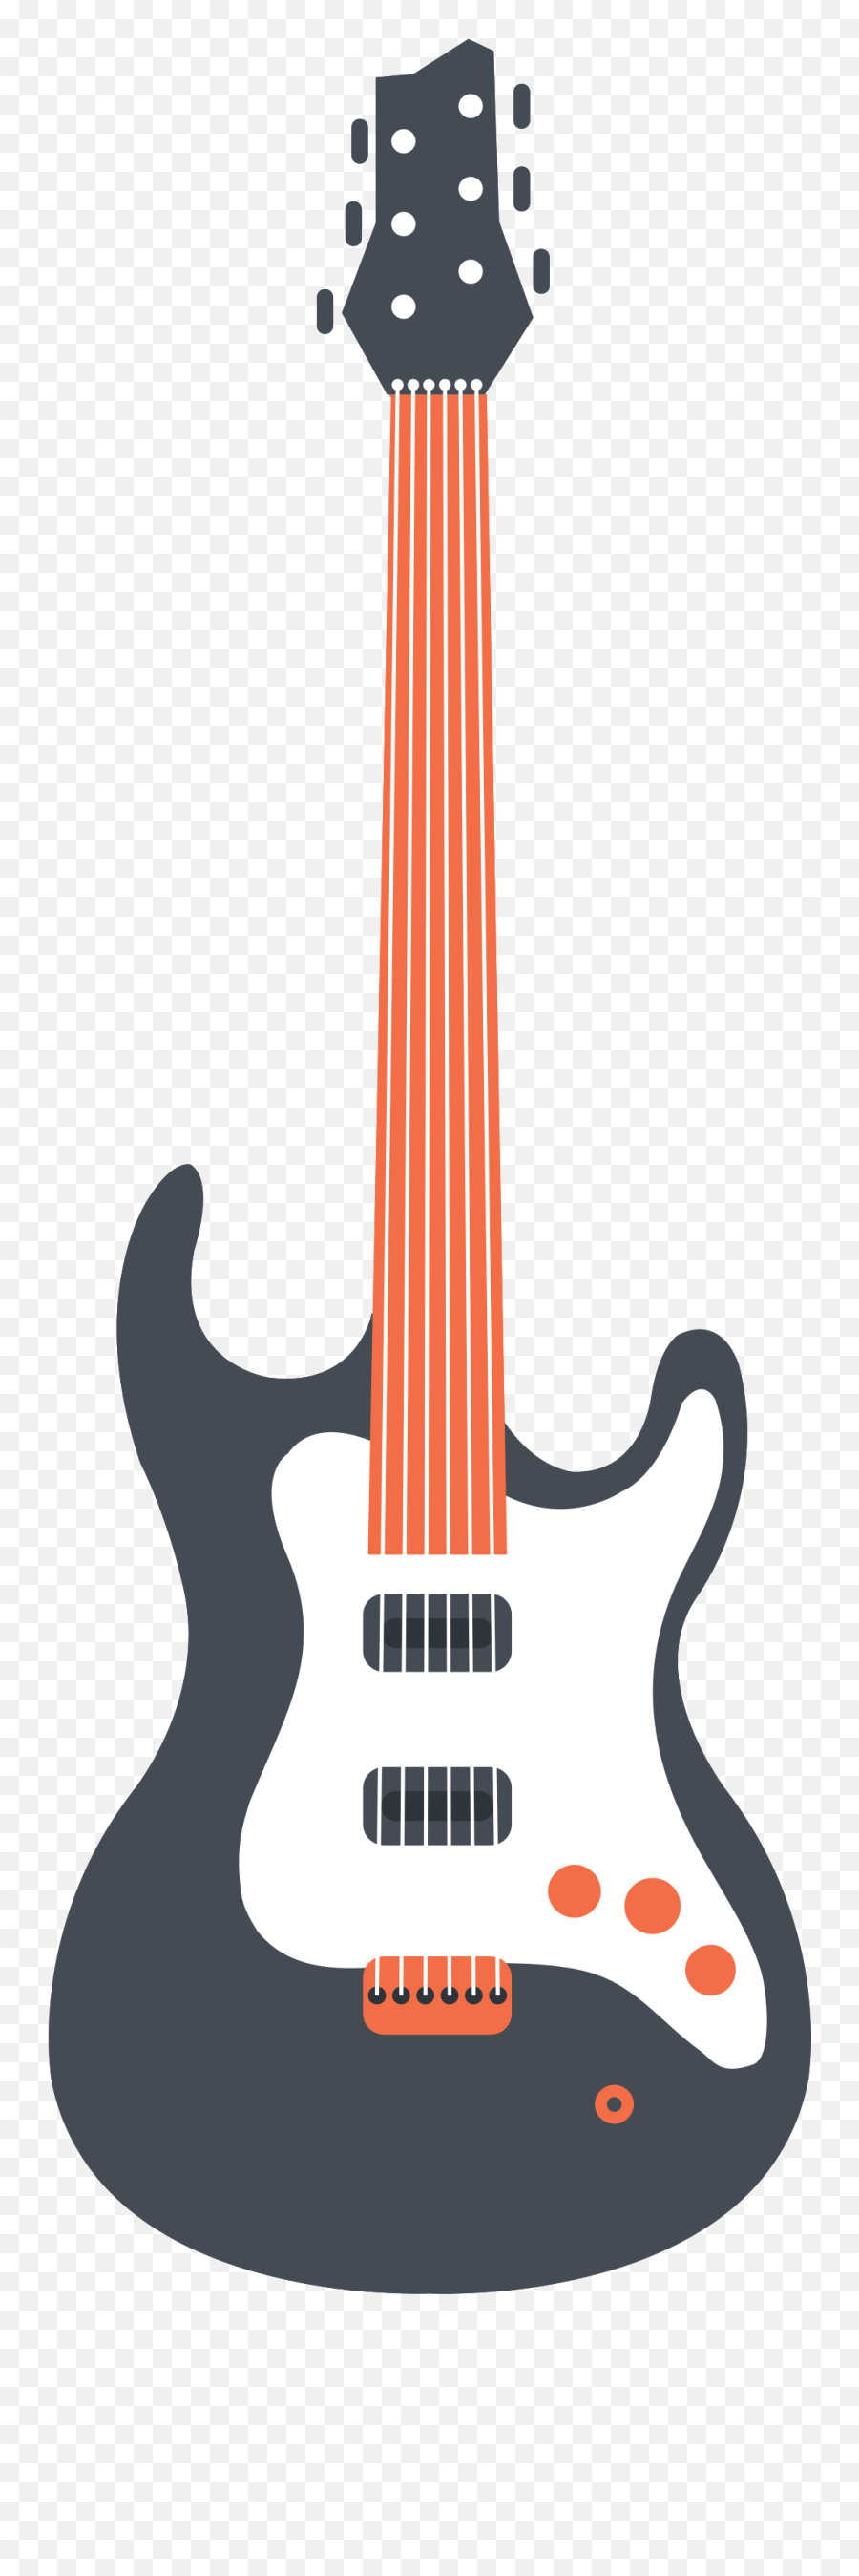 Music Equipment Electric Guitar Png - Solid Emoji,Guitar Png